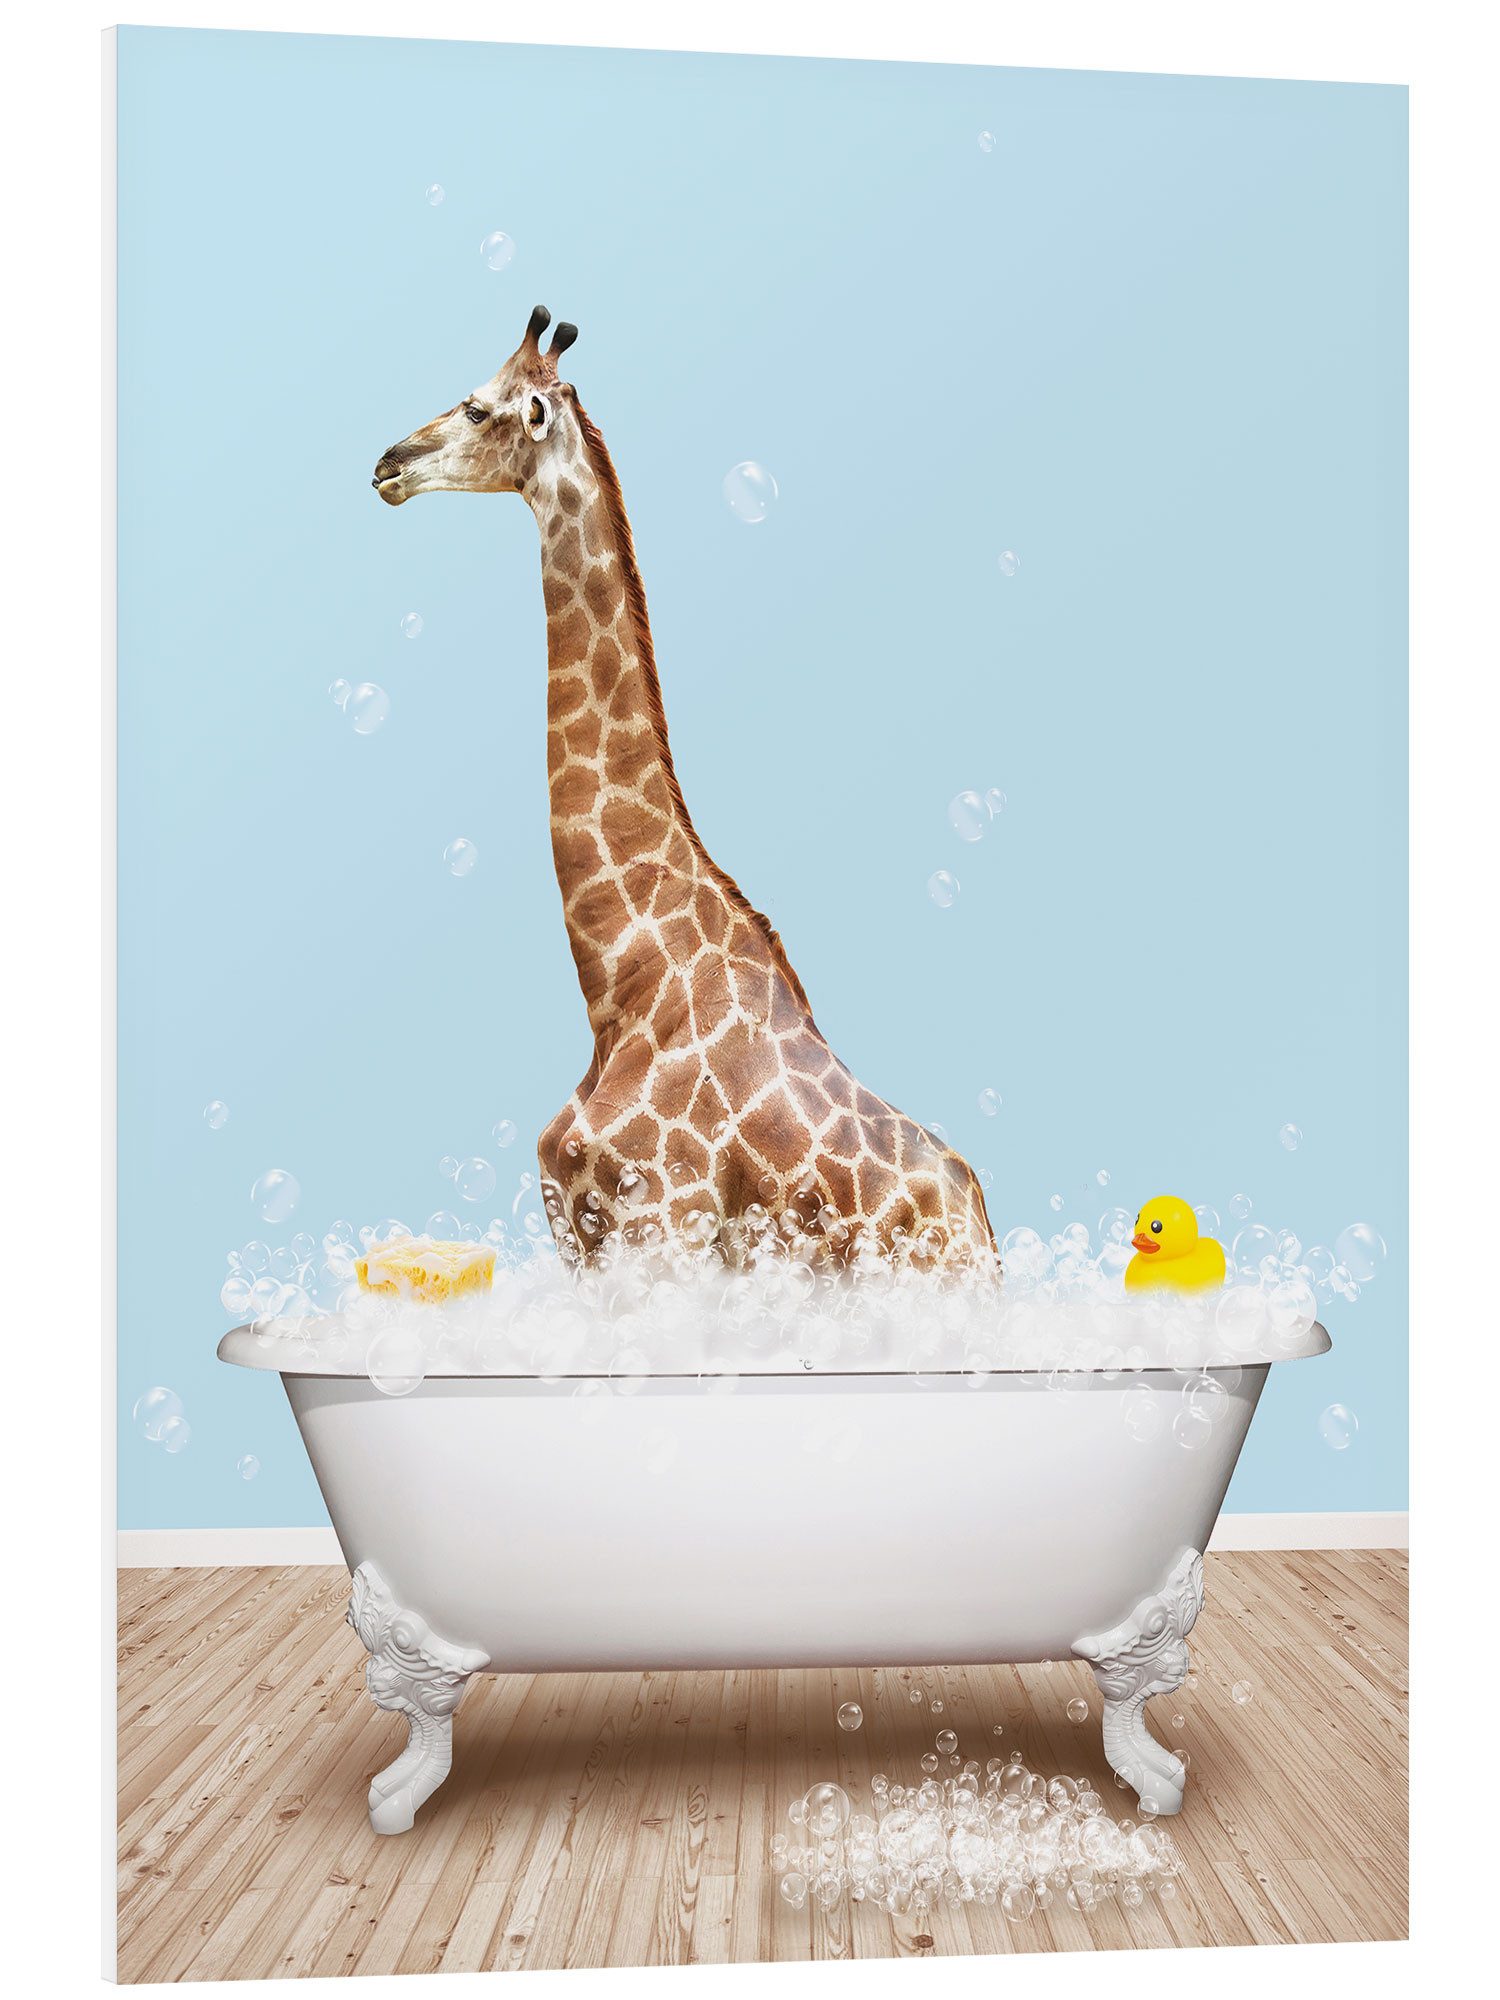 Posterlounge Forex-Bild Pineapple Licensing, Süße Giraffe in der Badewanne, Badezimmer Illustration